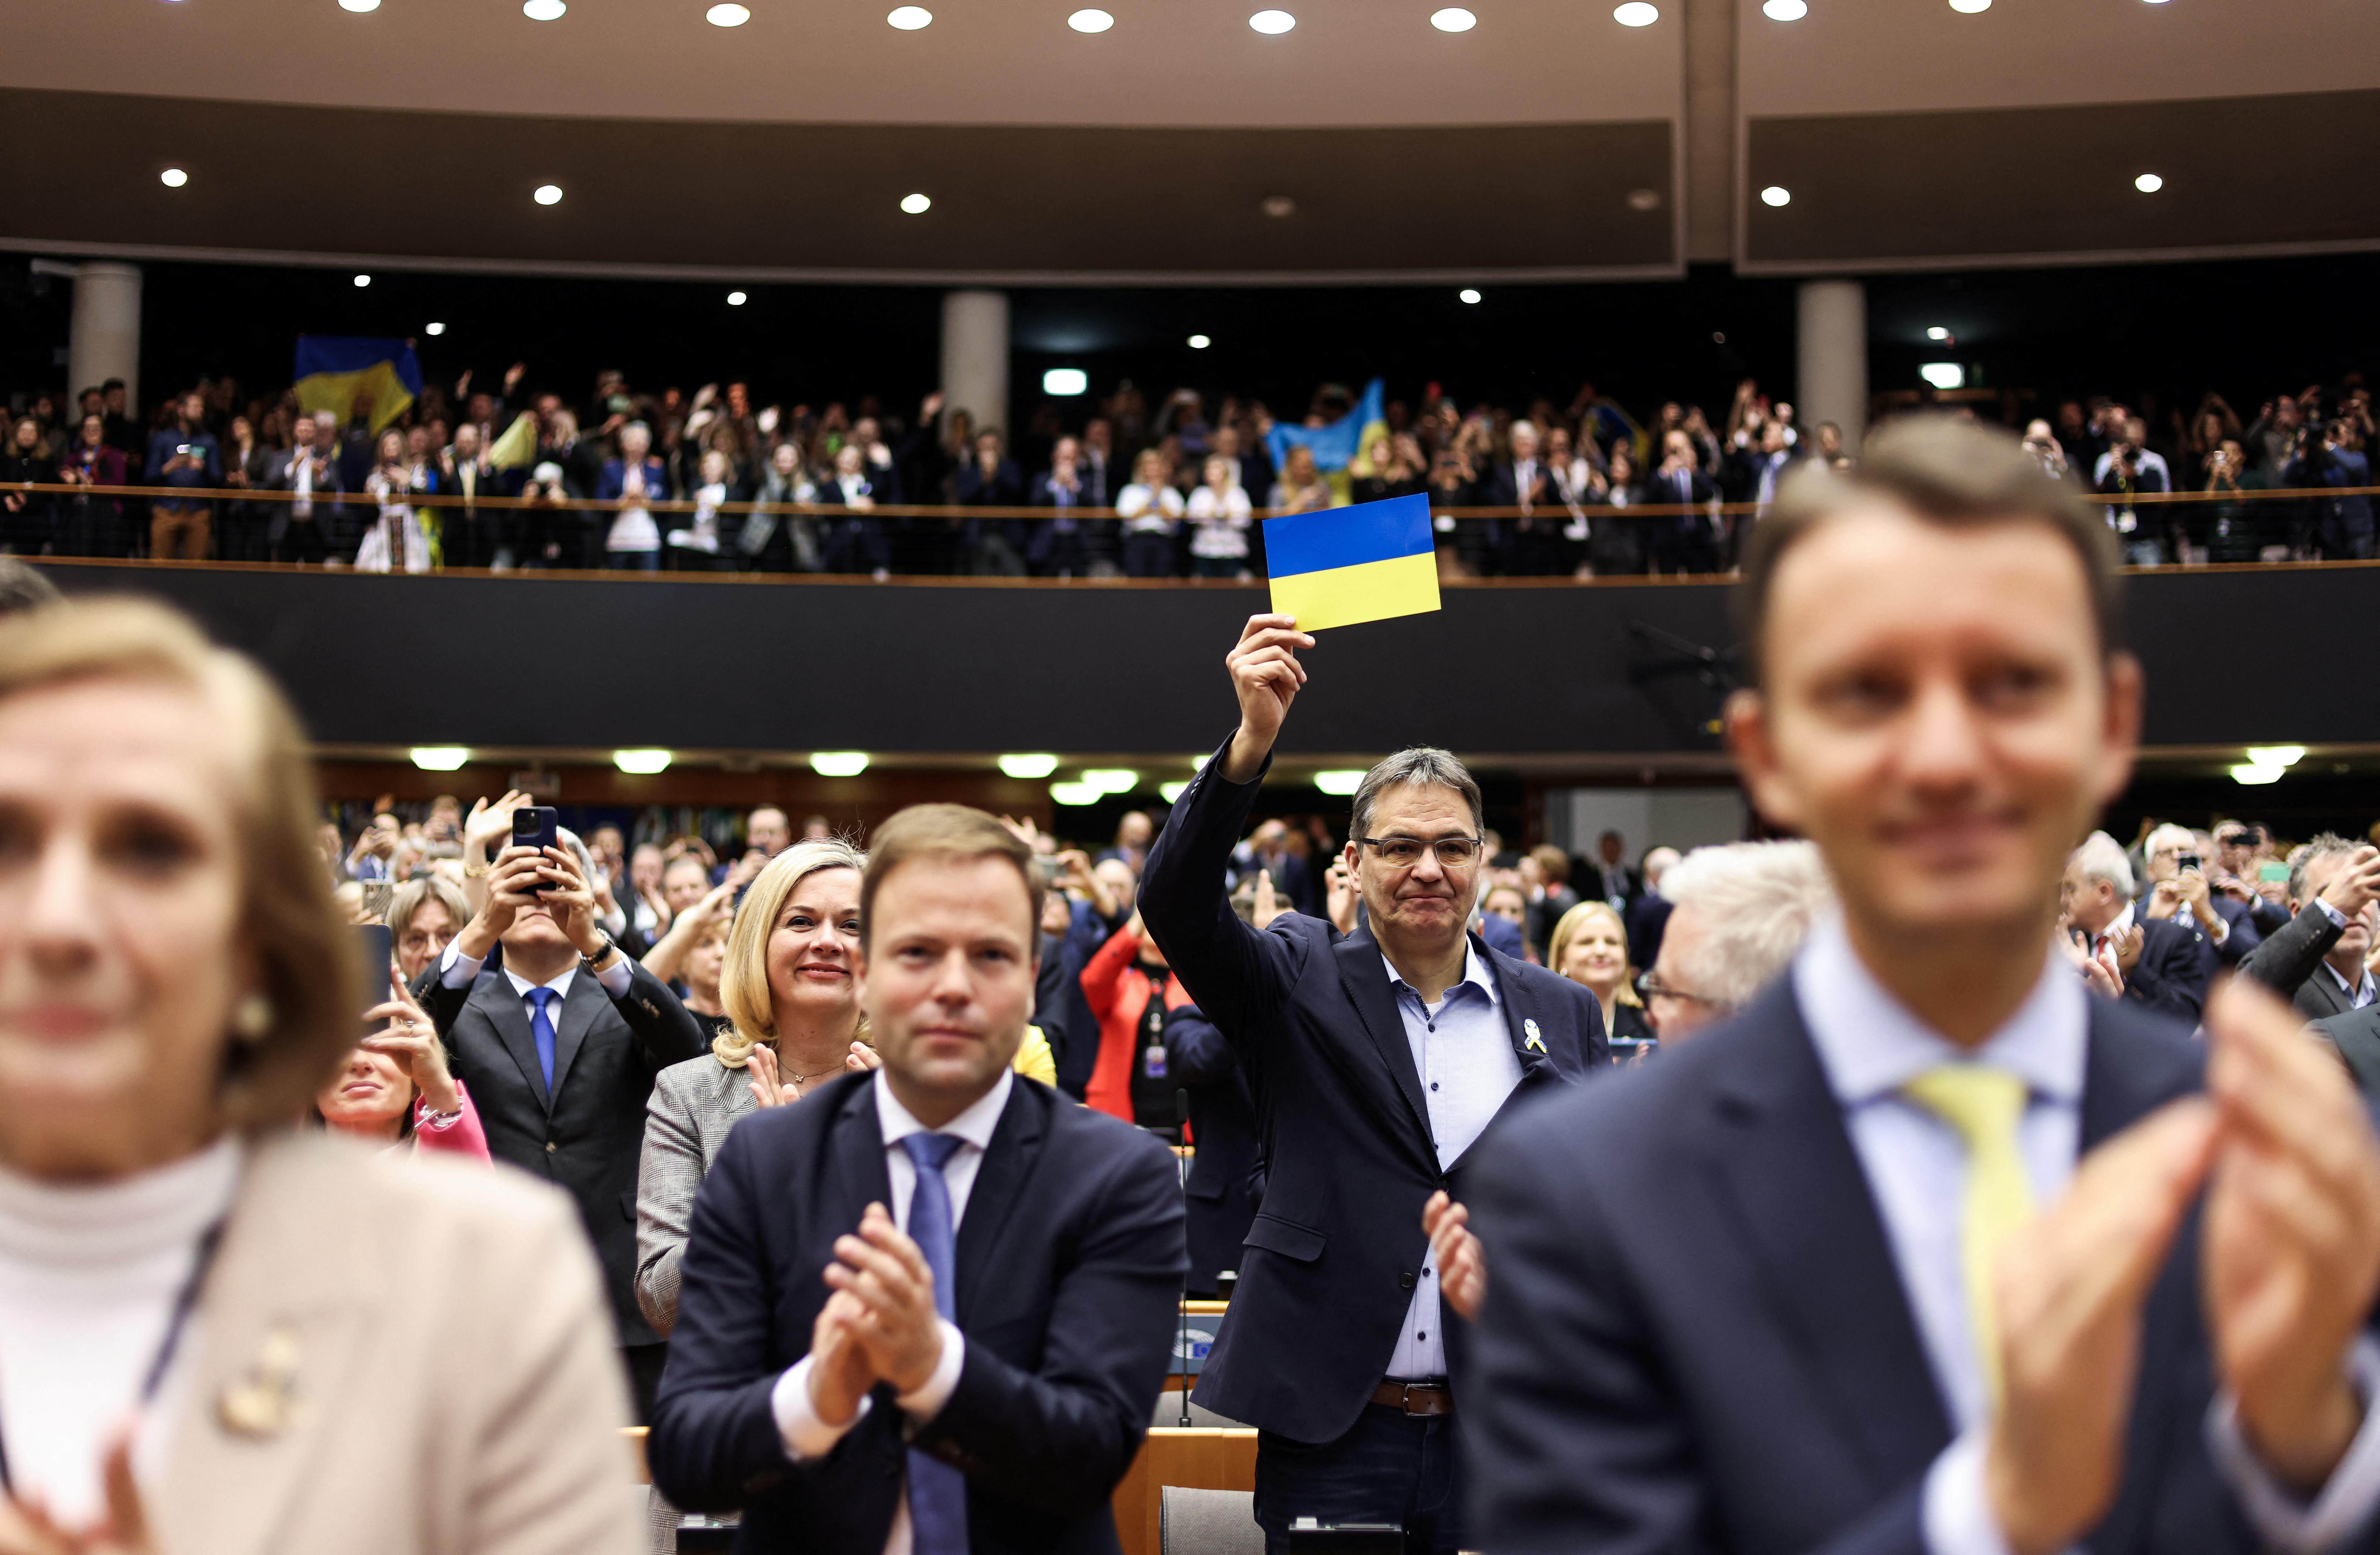 Un eurodiputado con la bandera ucraniana. Zelensky aseguró que la perspectiva de que su país se una a la UE los motiva a mantenerse fuertes y mantener el rumbo. (Kenzo TRIBOUILLARD / AFP)